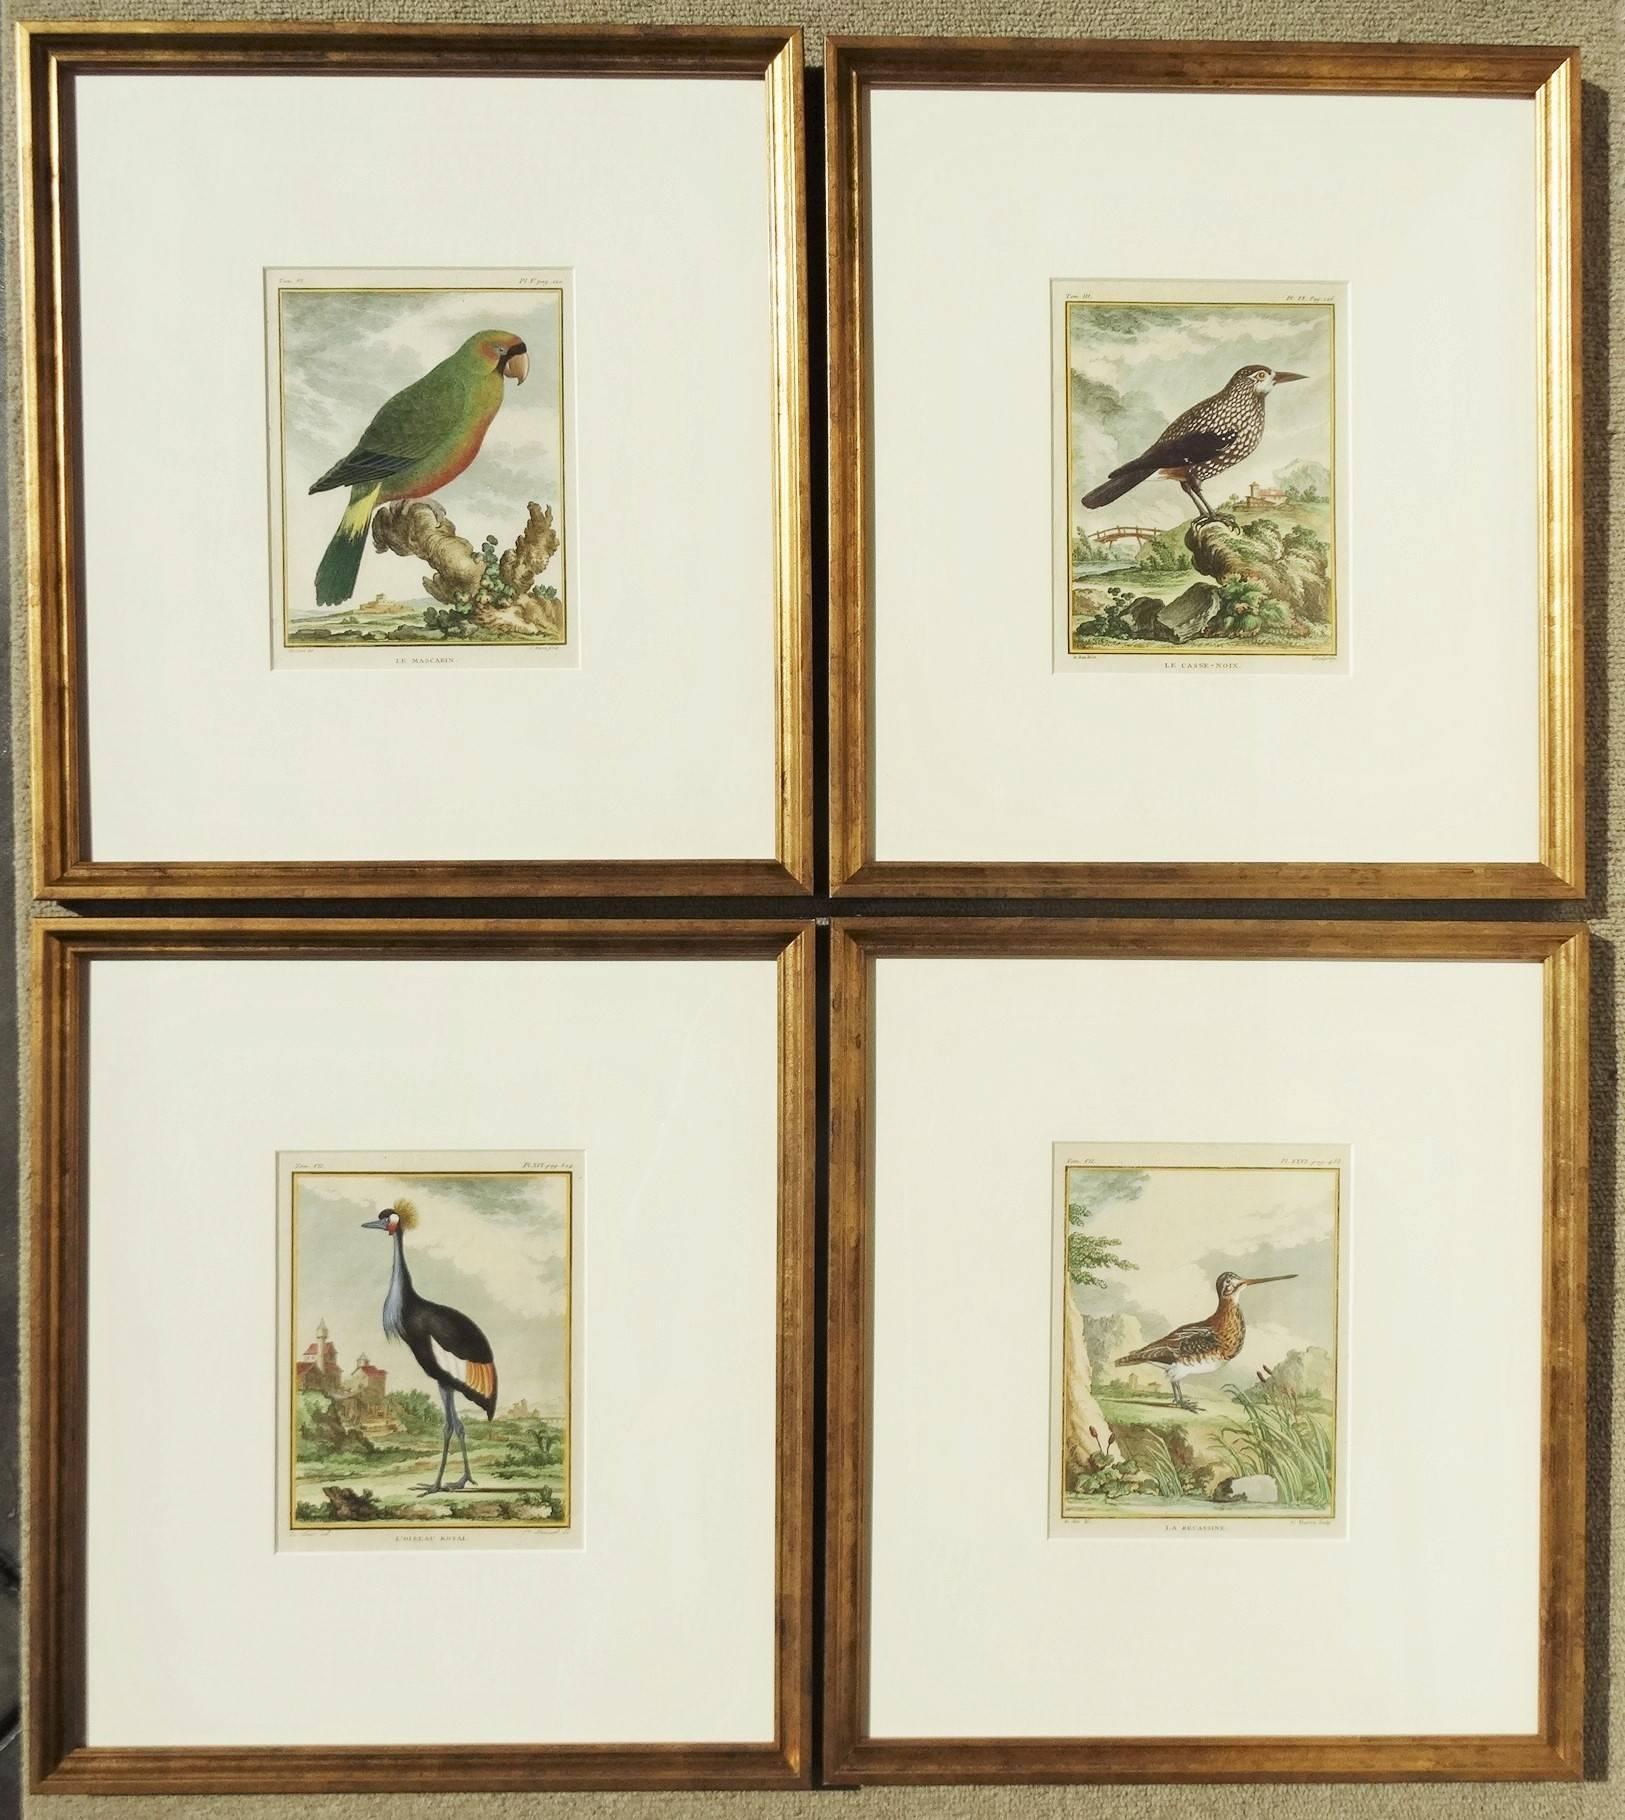 Unknown Animal Print - "Birds in Landscape"